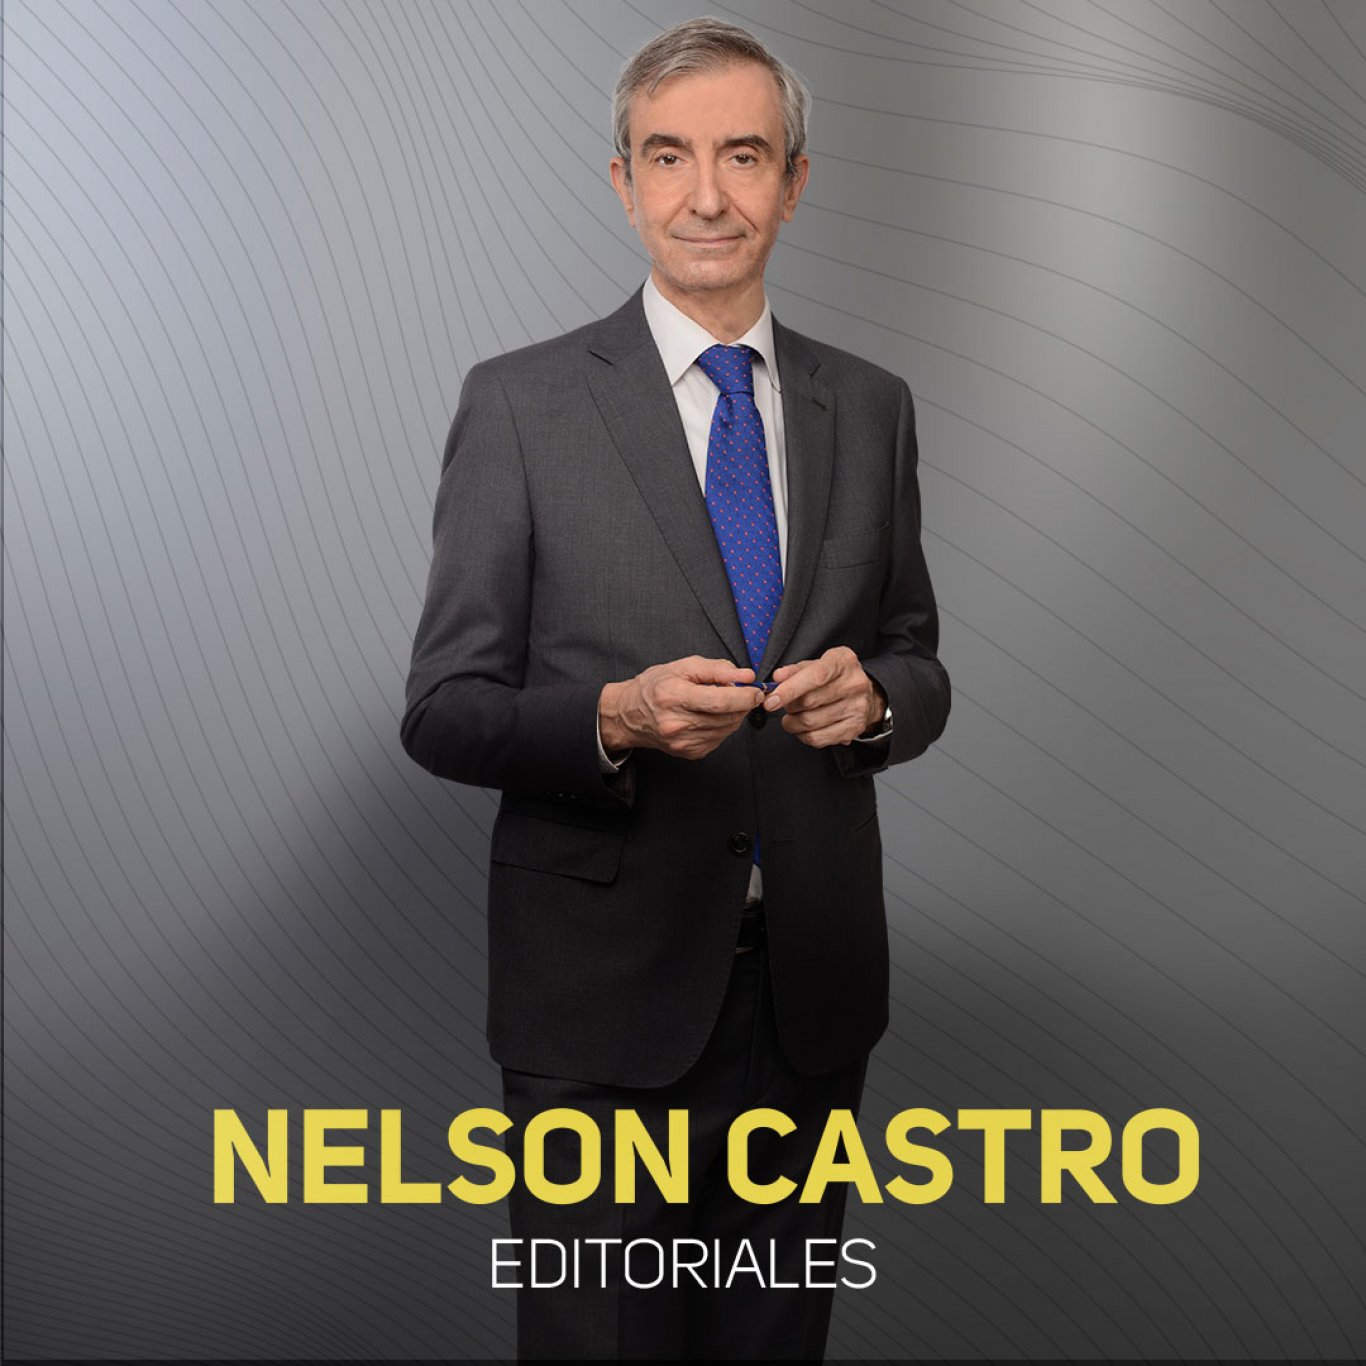 Radio Rivadavia y las editoriales de Nelson Castro